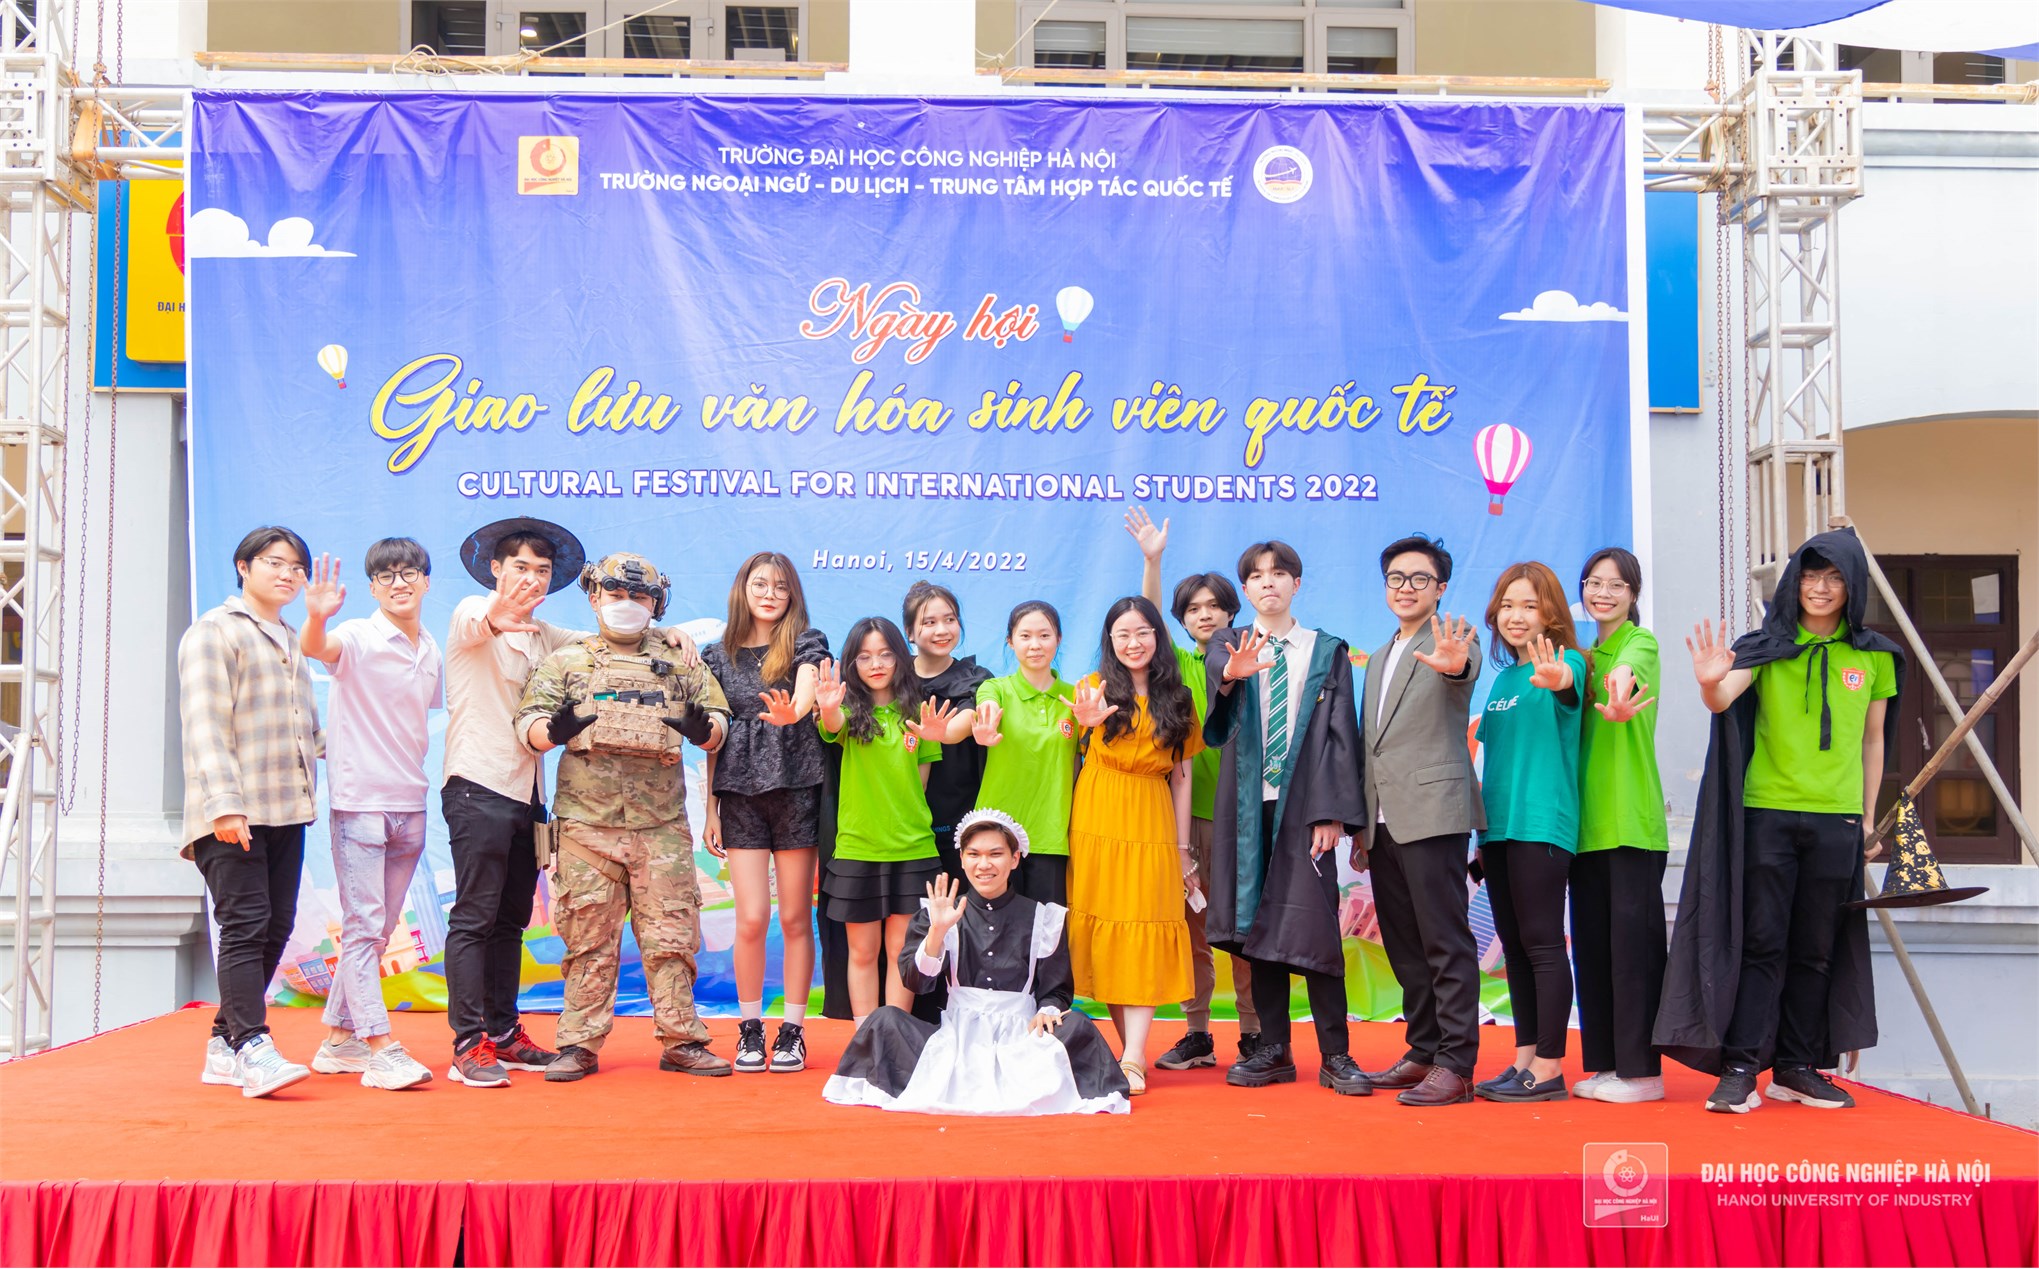 Ngày hội giao lưu văn hóa sinh viên quốc tế tại Đại học Công nghiệp Hà Nội